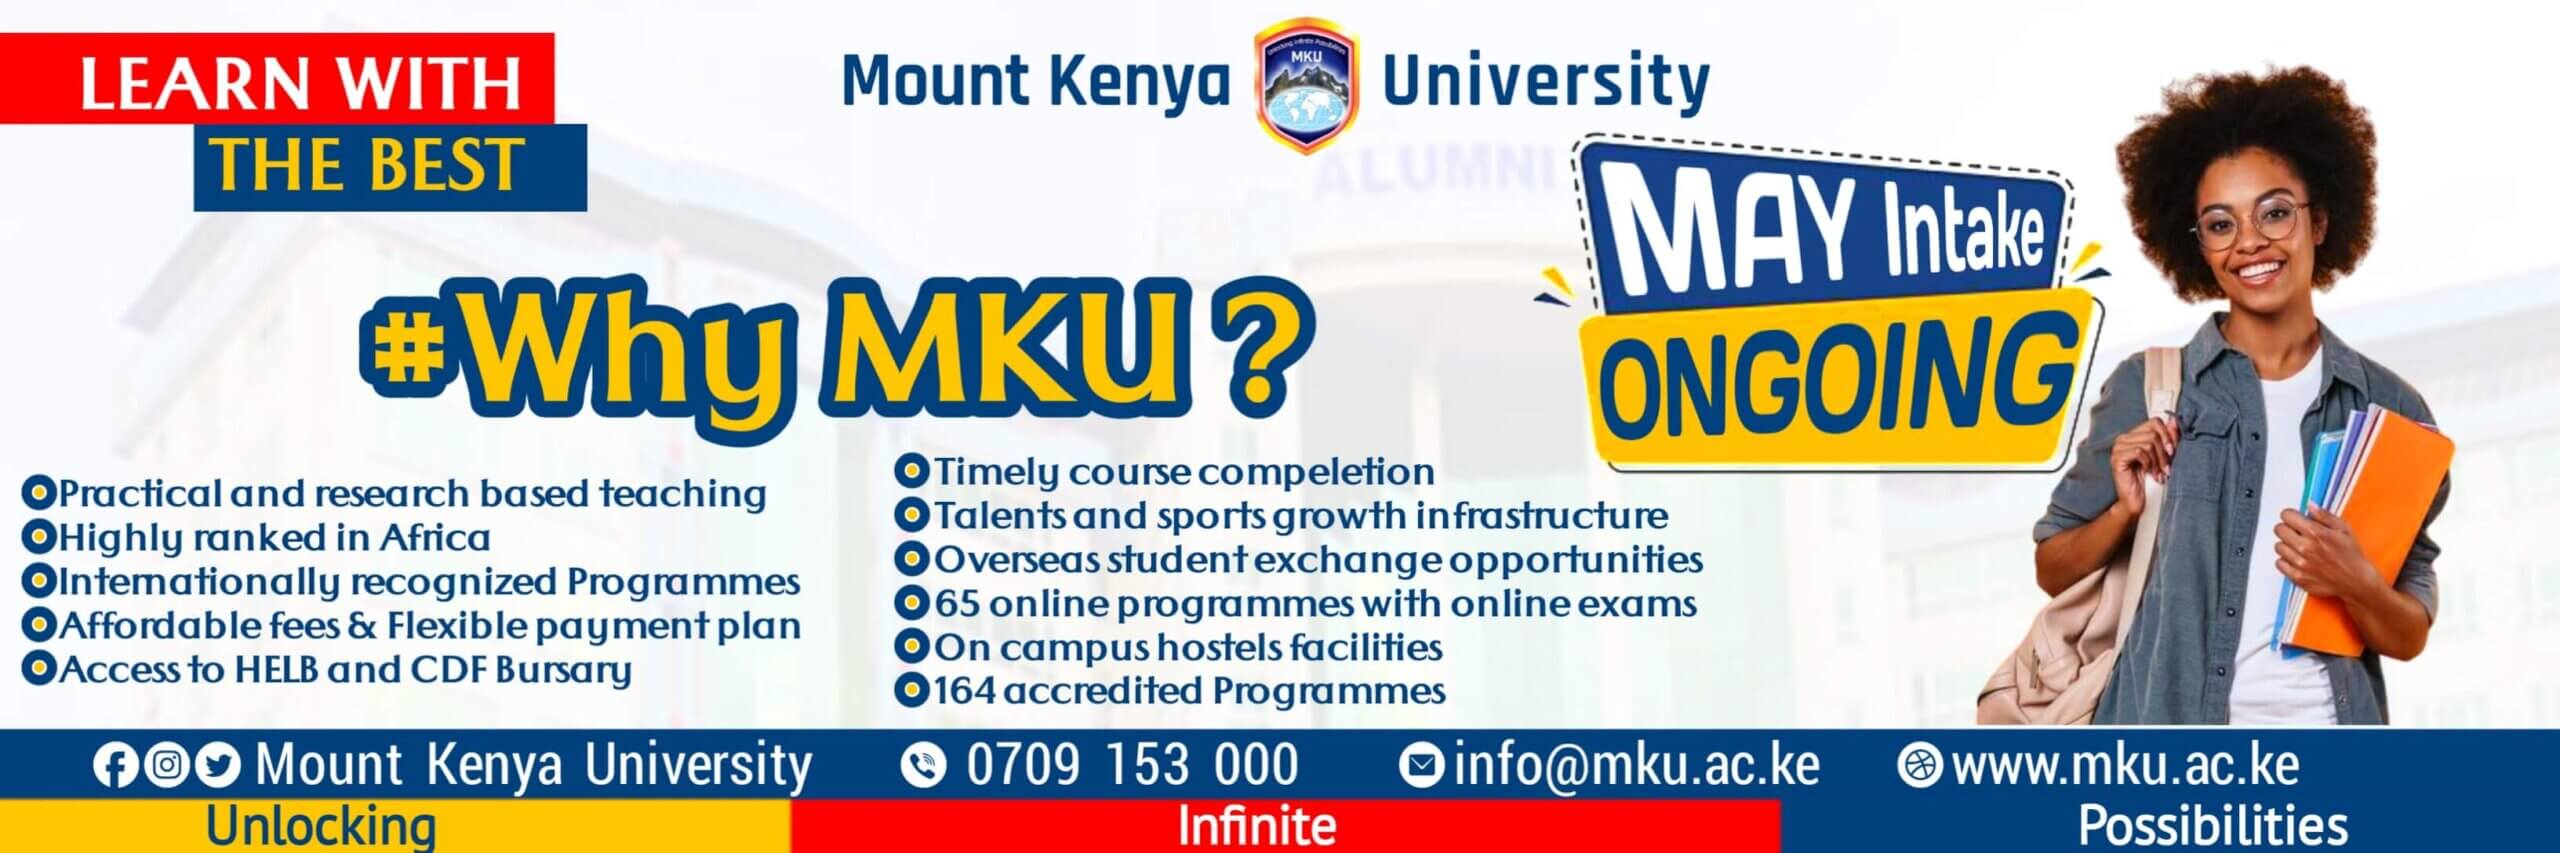 Mount-Kenya-University-May-intake-1